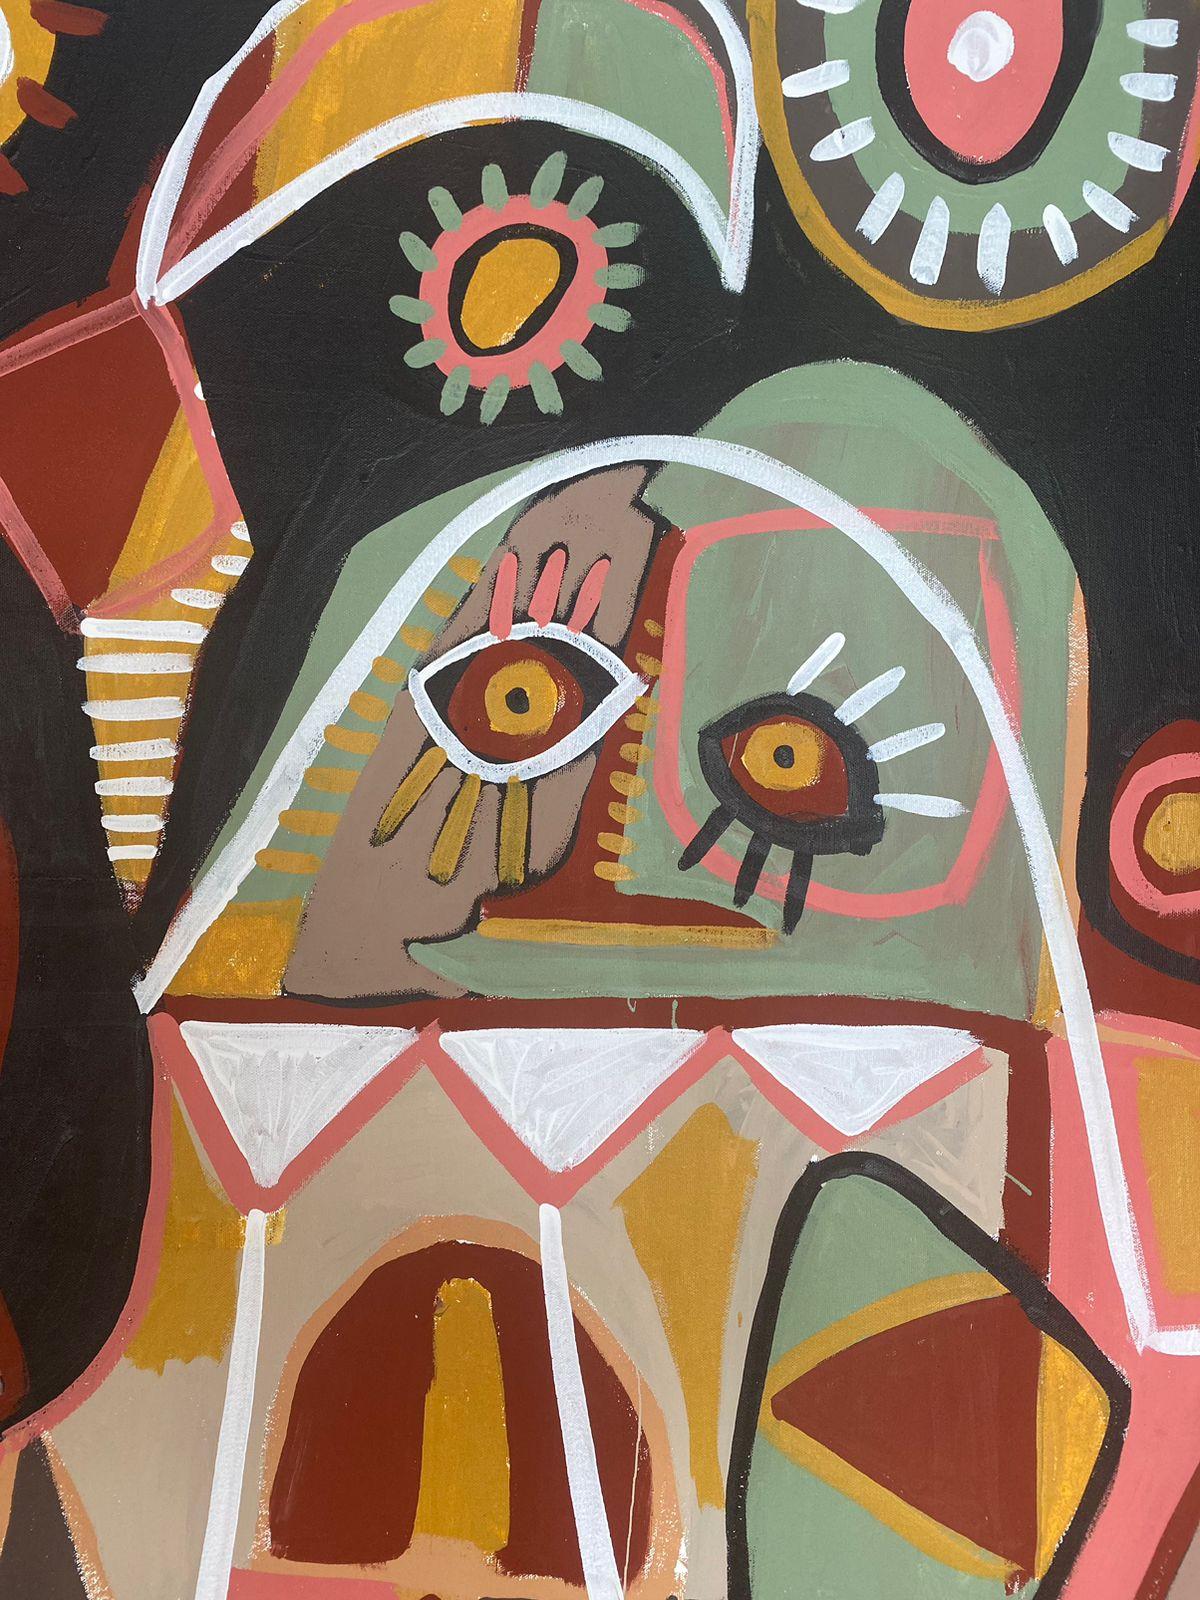 Art contemporain, peinture abstraite
Acrylique sur toile
185x270cm
Signé 
LIVRAISON GRATUITE ROLLE


A propos de l'artiste
Enrique Pichardo (Mexico, 1973) est diplômé de l'Escuela Nacional de Pintura, Escultura y Grabado (ENPEG) 